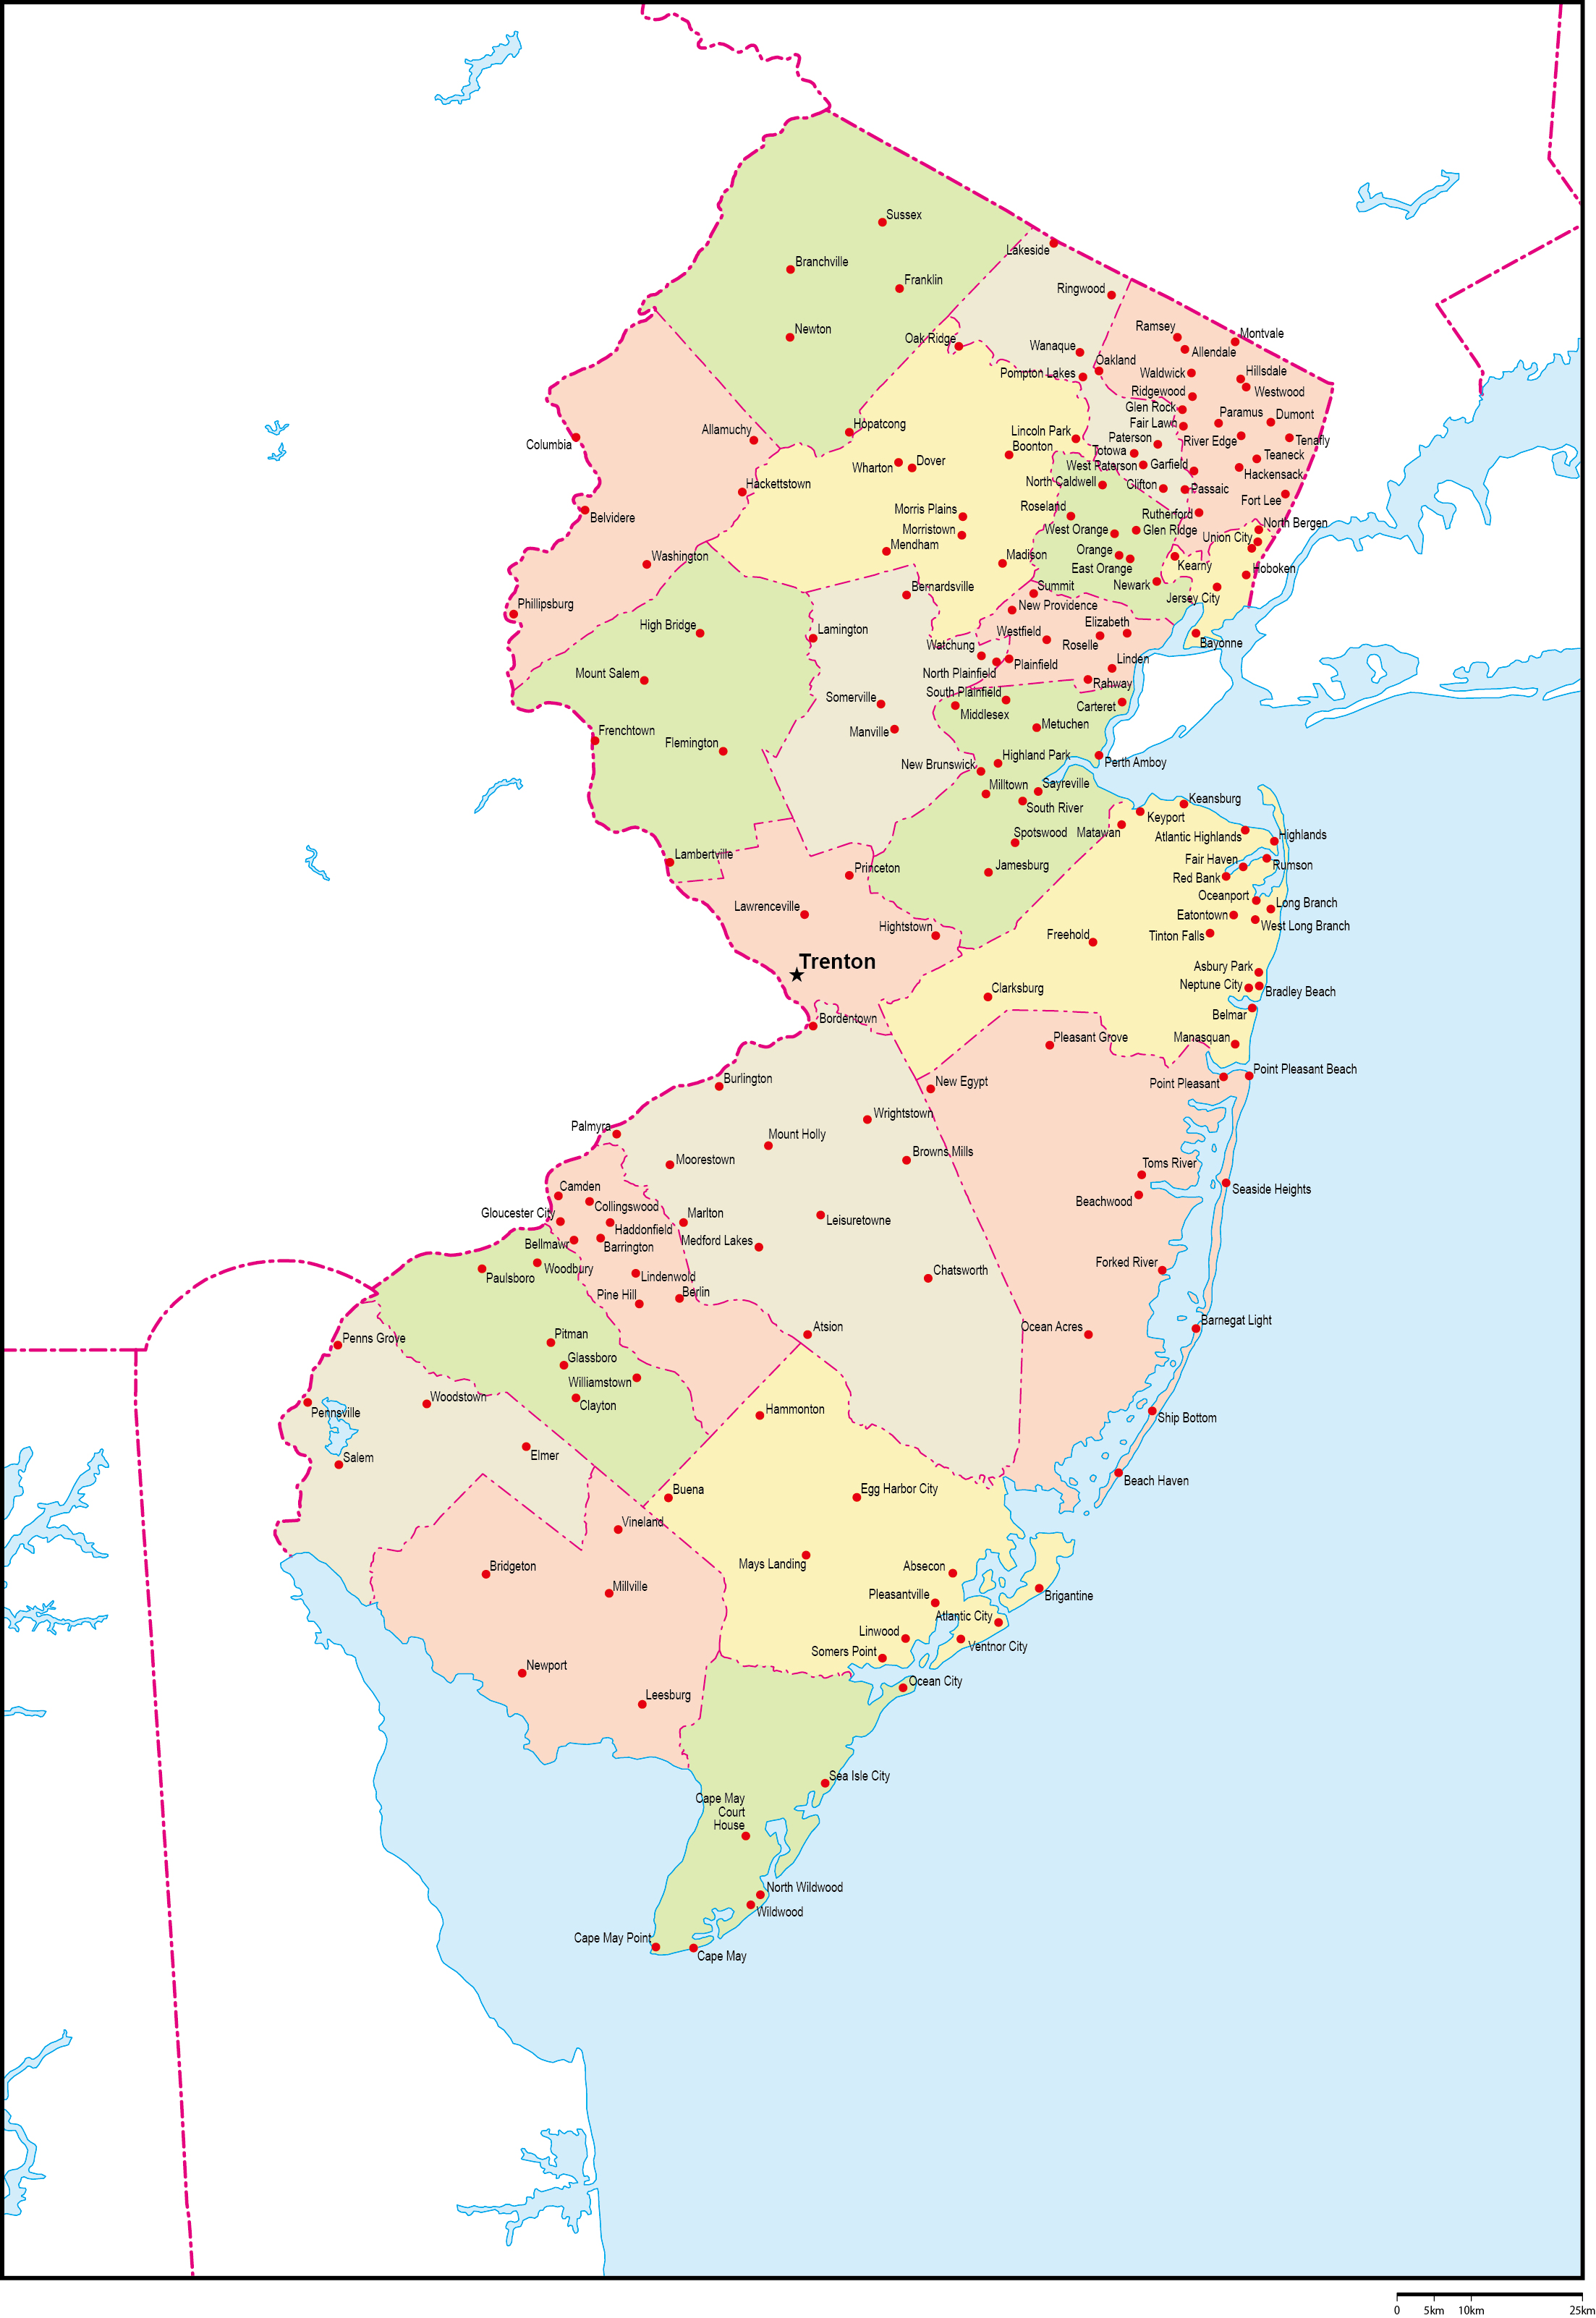 ニュージャージー州郡色分け地図州都・主な都市あり(英語)フリーデータの画像